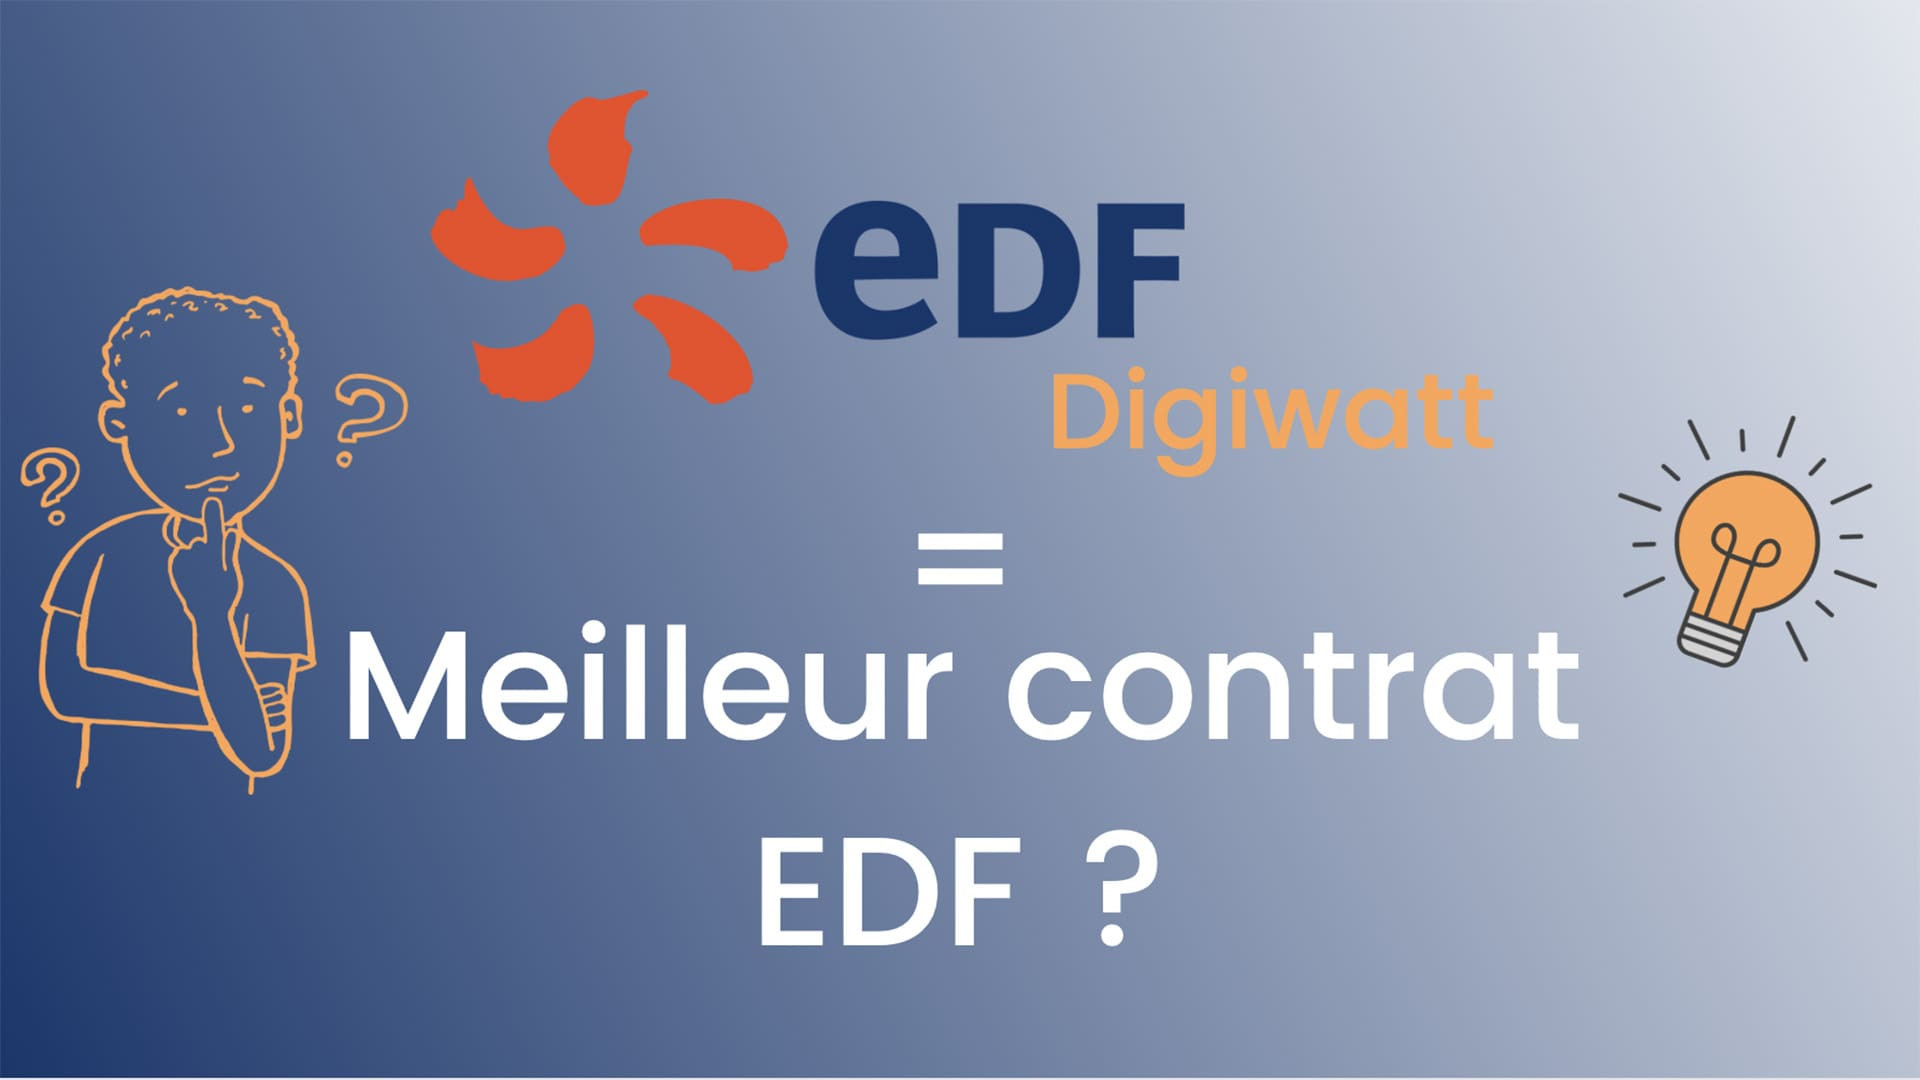 Digiwatt la meilleure offre EDF